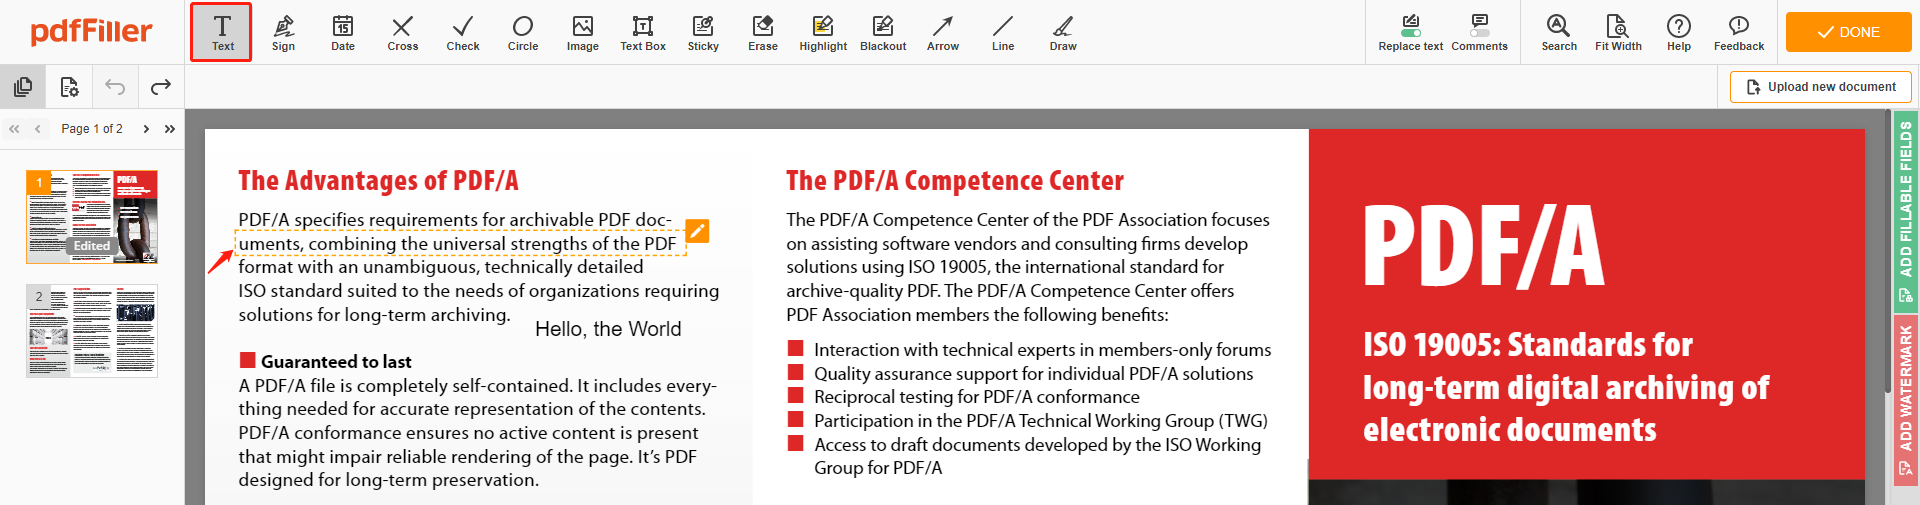 Sehen Sie sich die Anleitung an, wie Sie ganz einfach online Text in eine PDF-Datei einfügen können